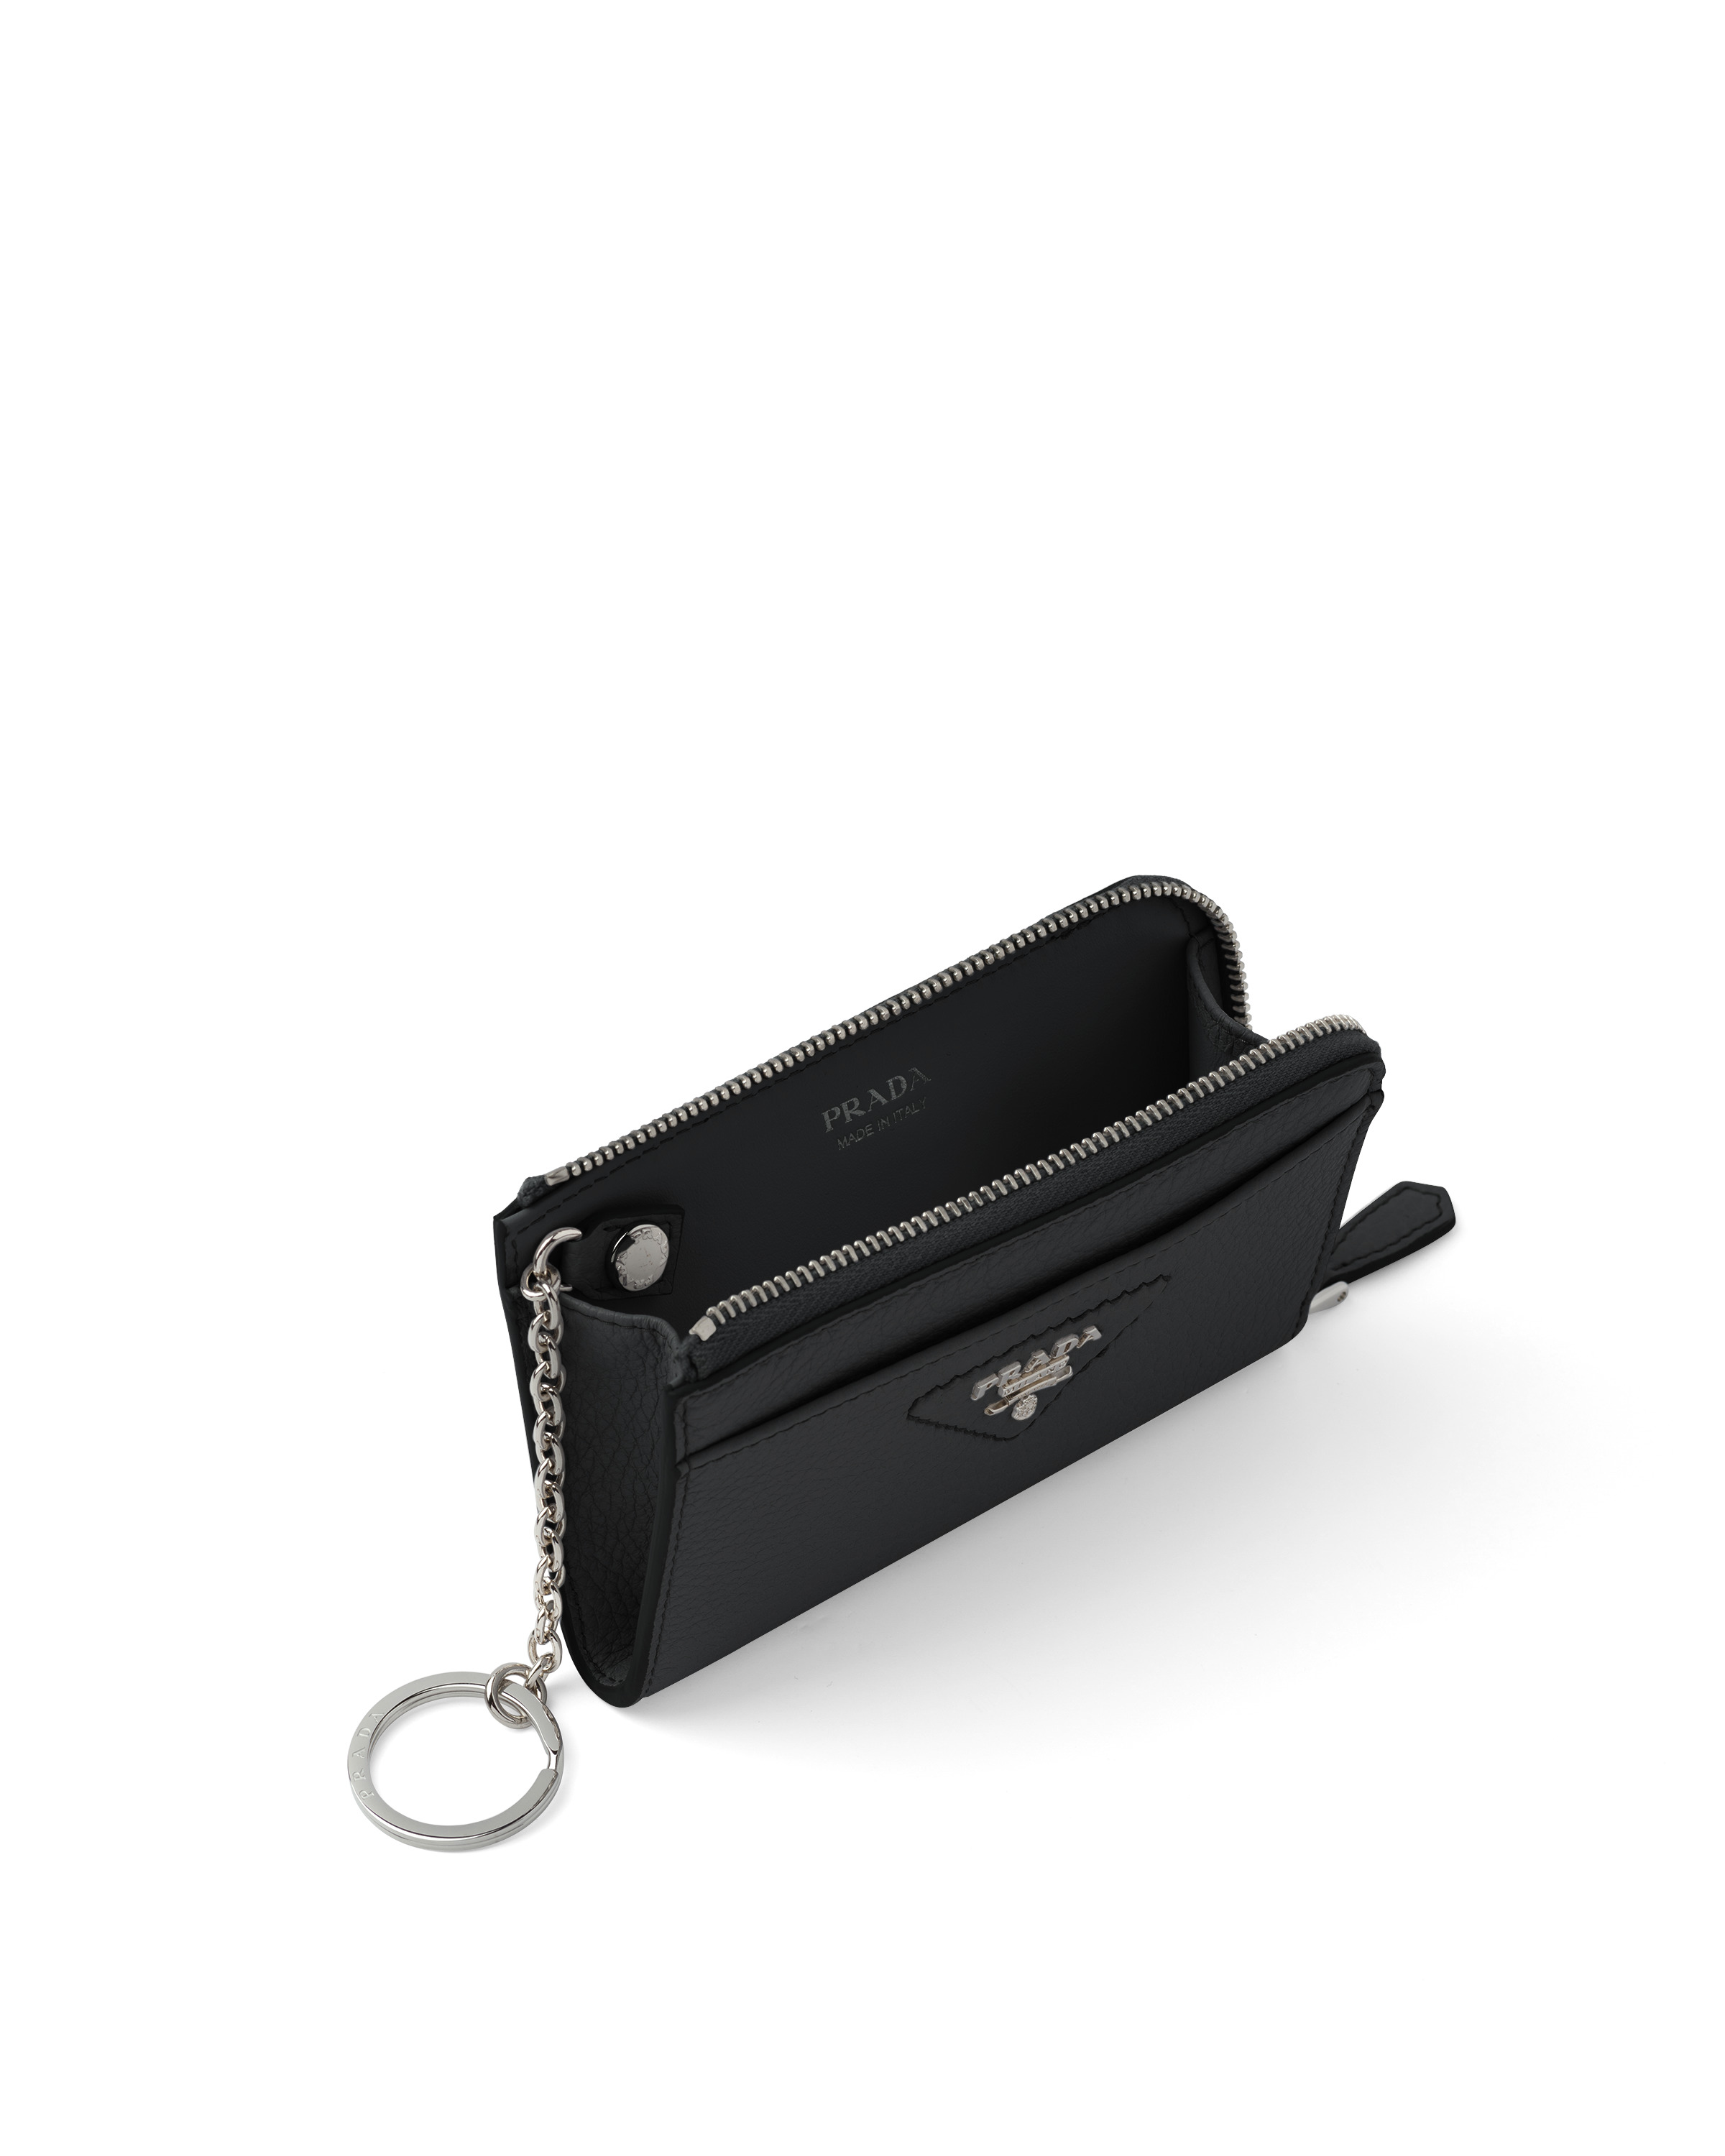 Leather key case - 2